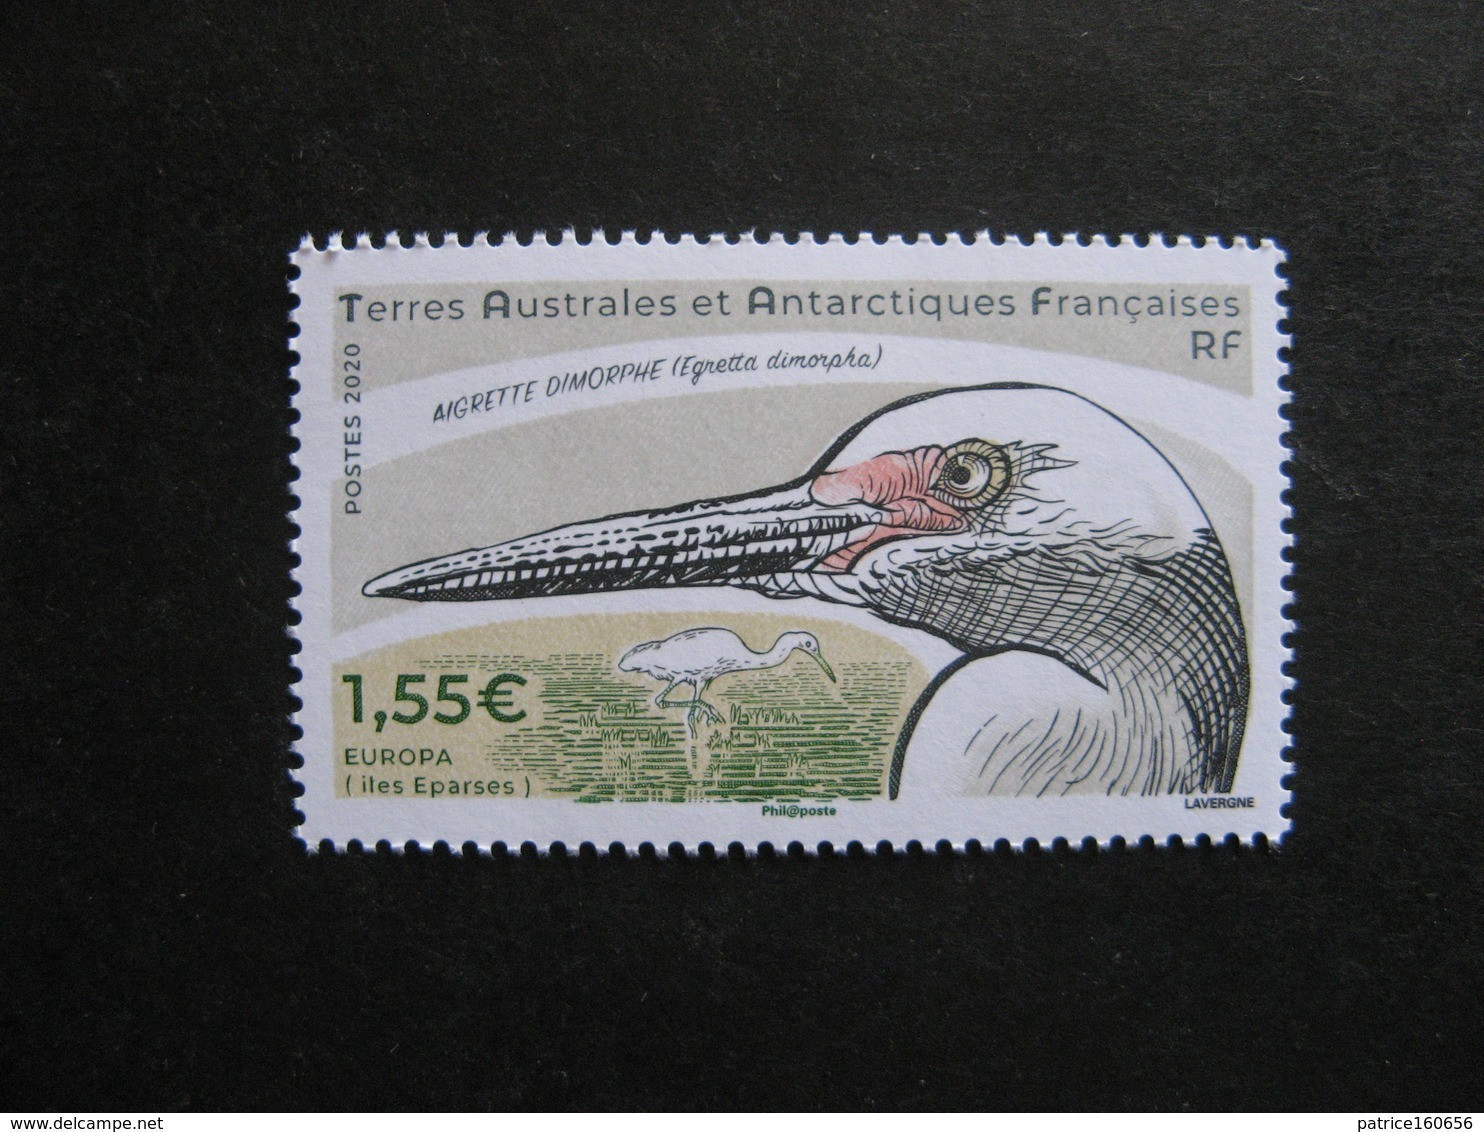 TAAF:  TB N° 915, Neuf XX. - Unused Stamps